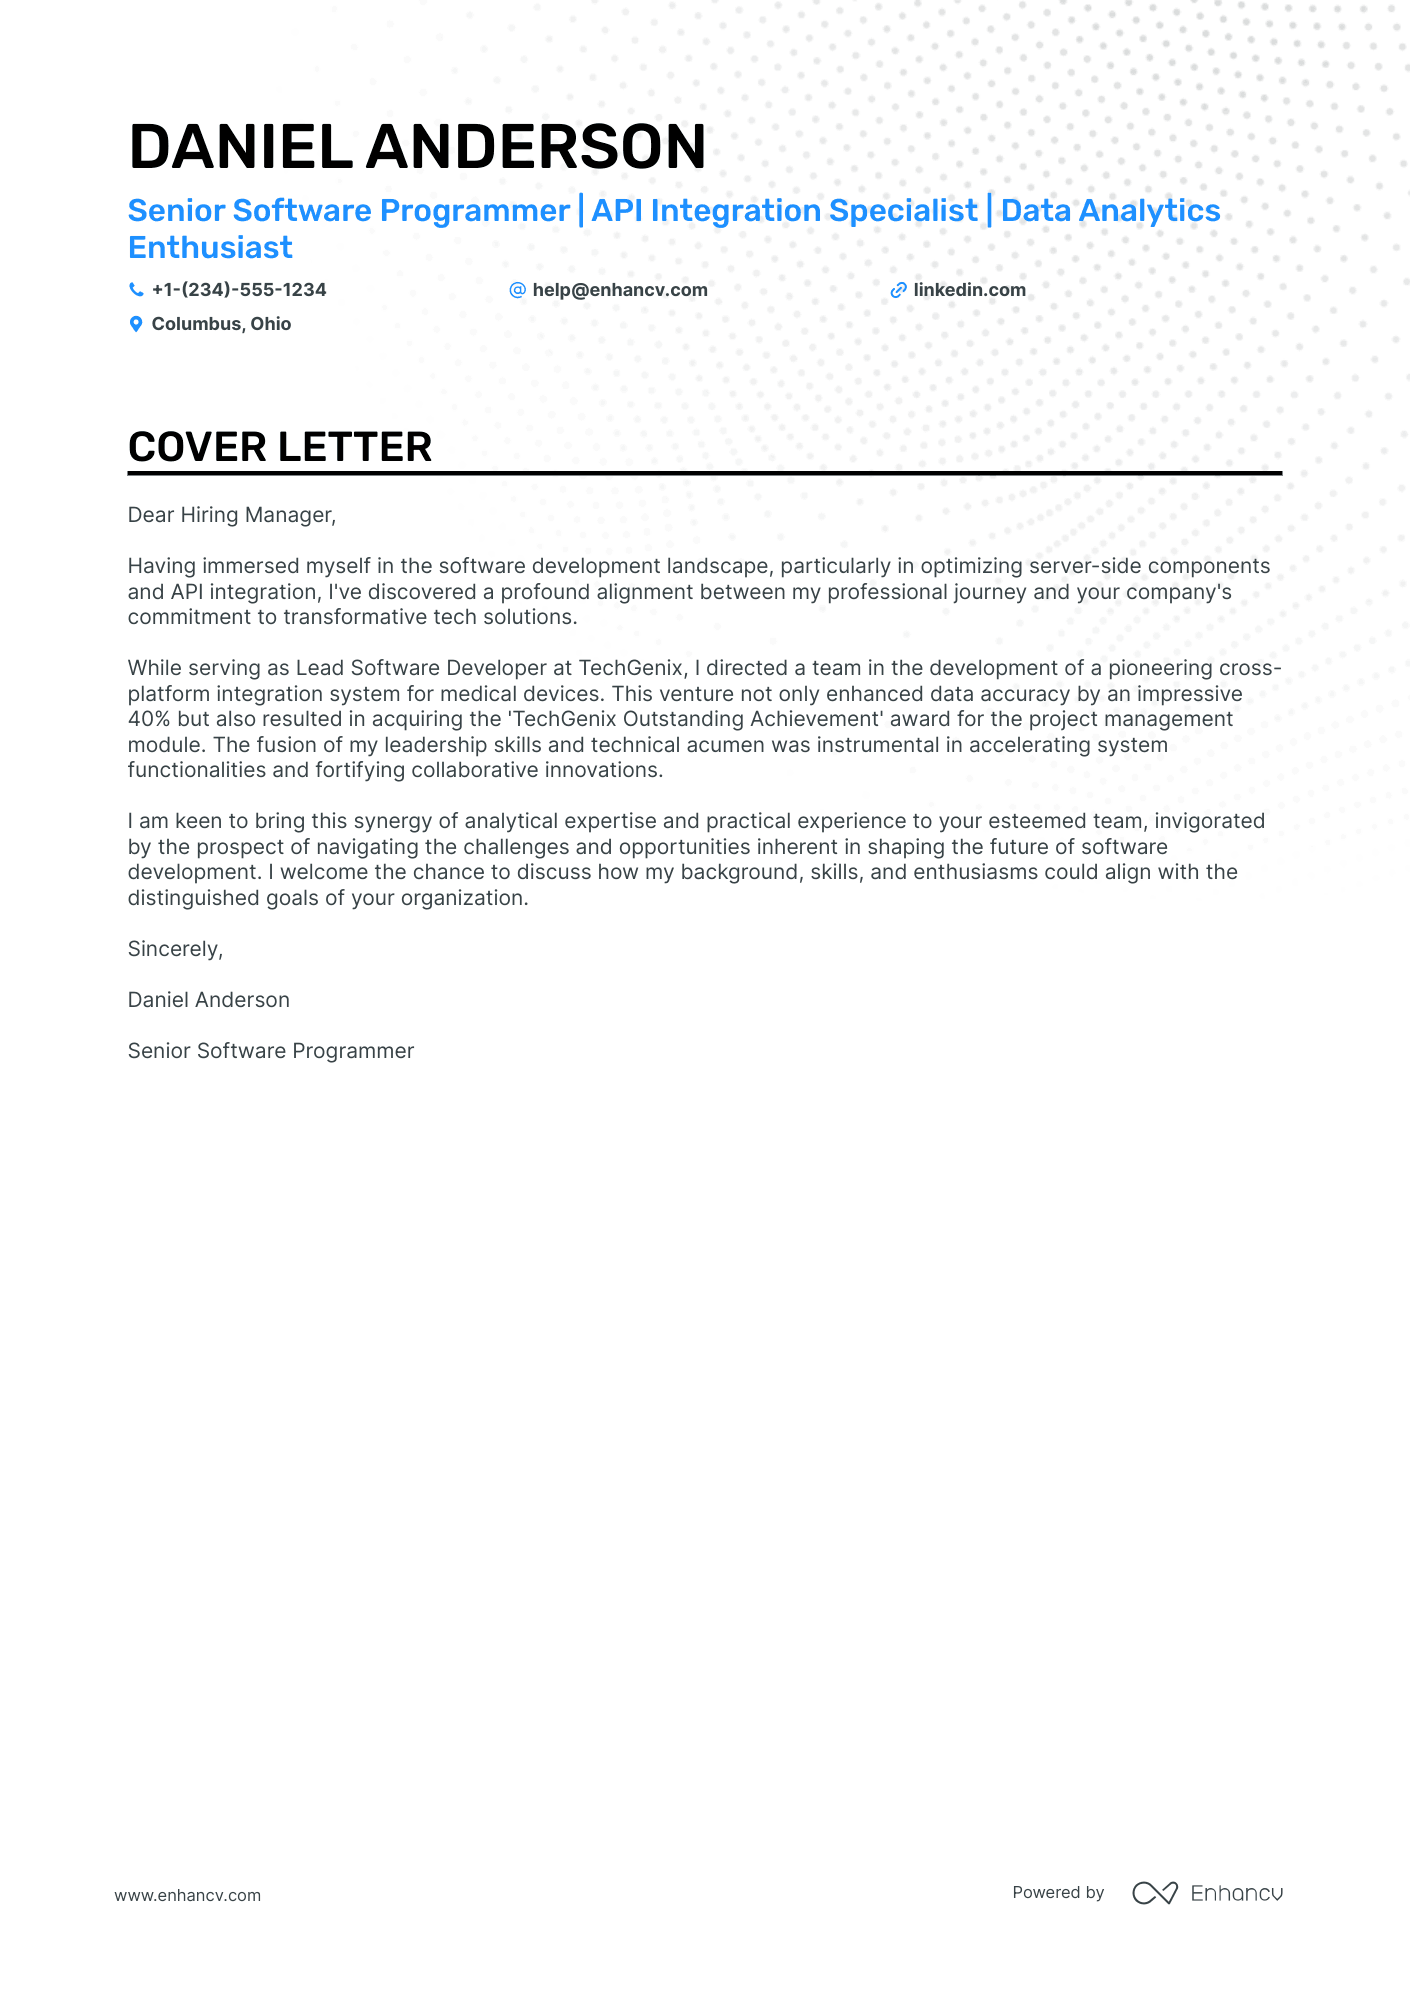 cover letter for applying web developer